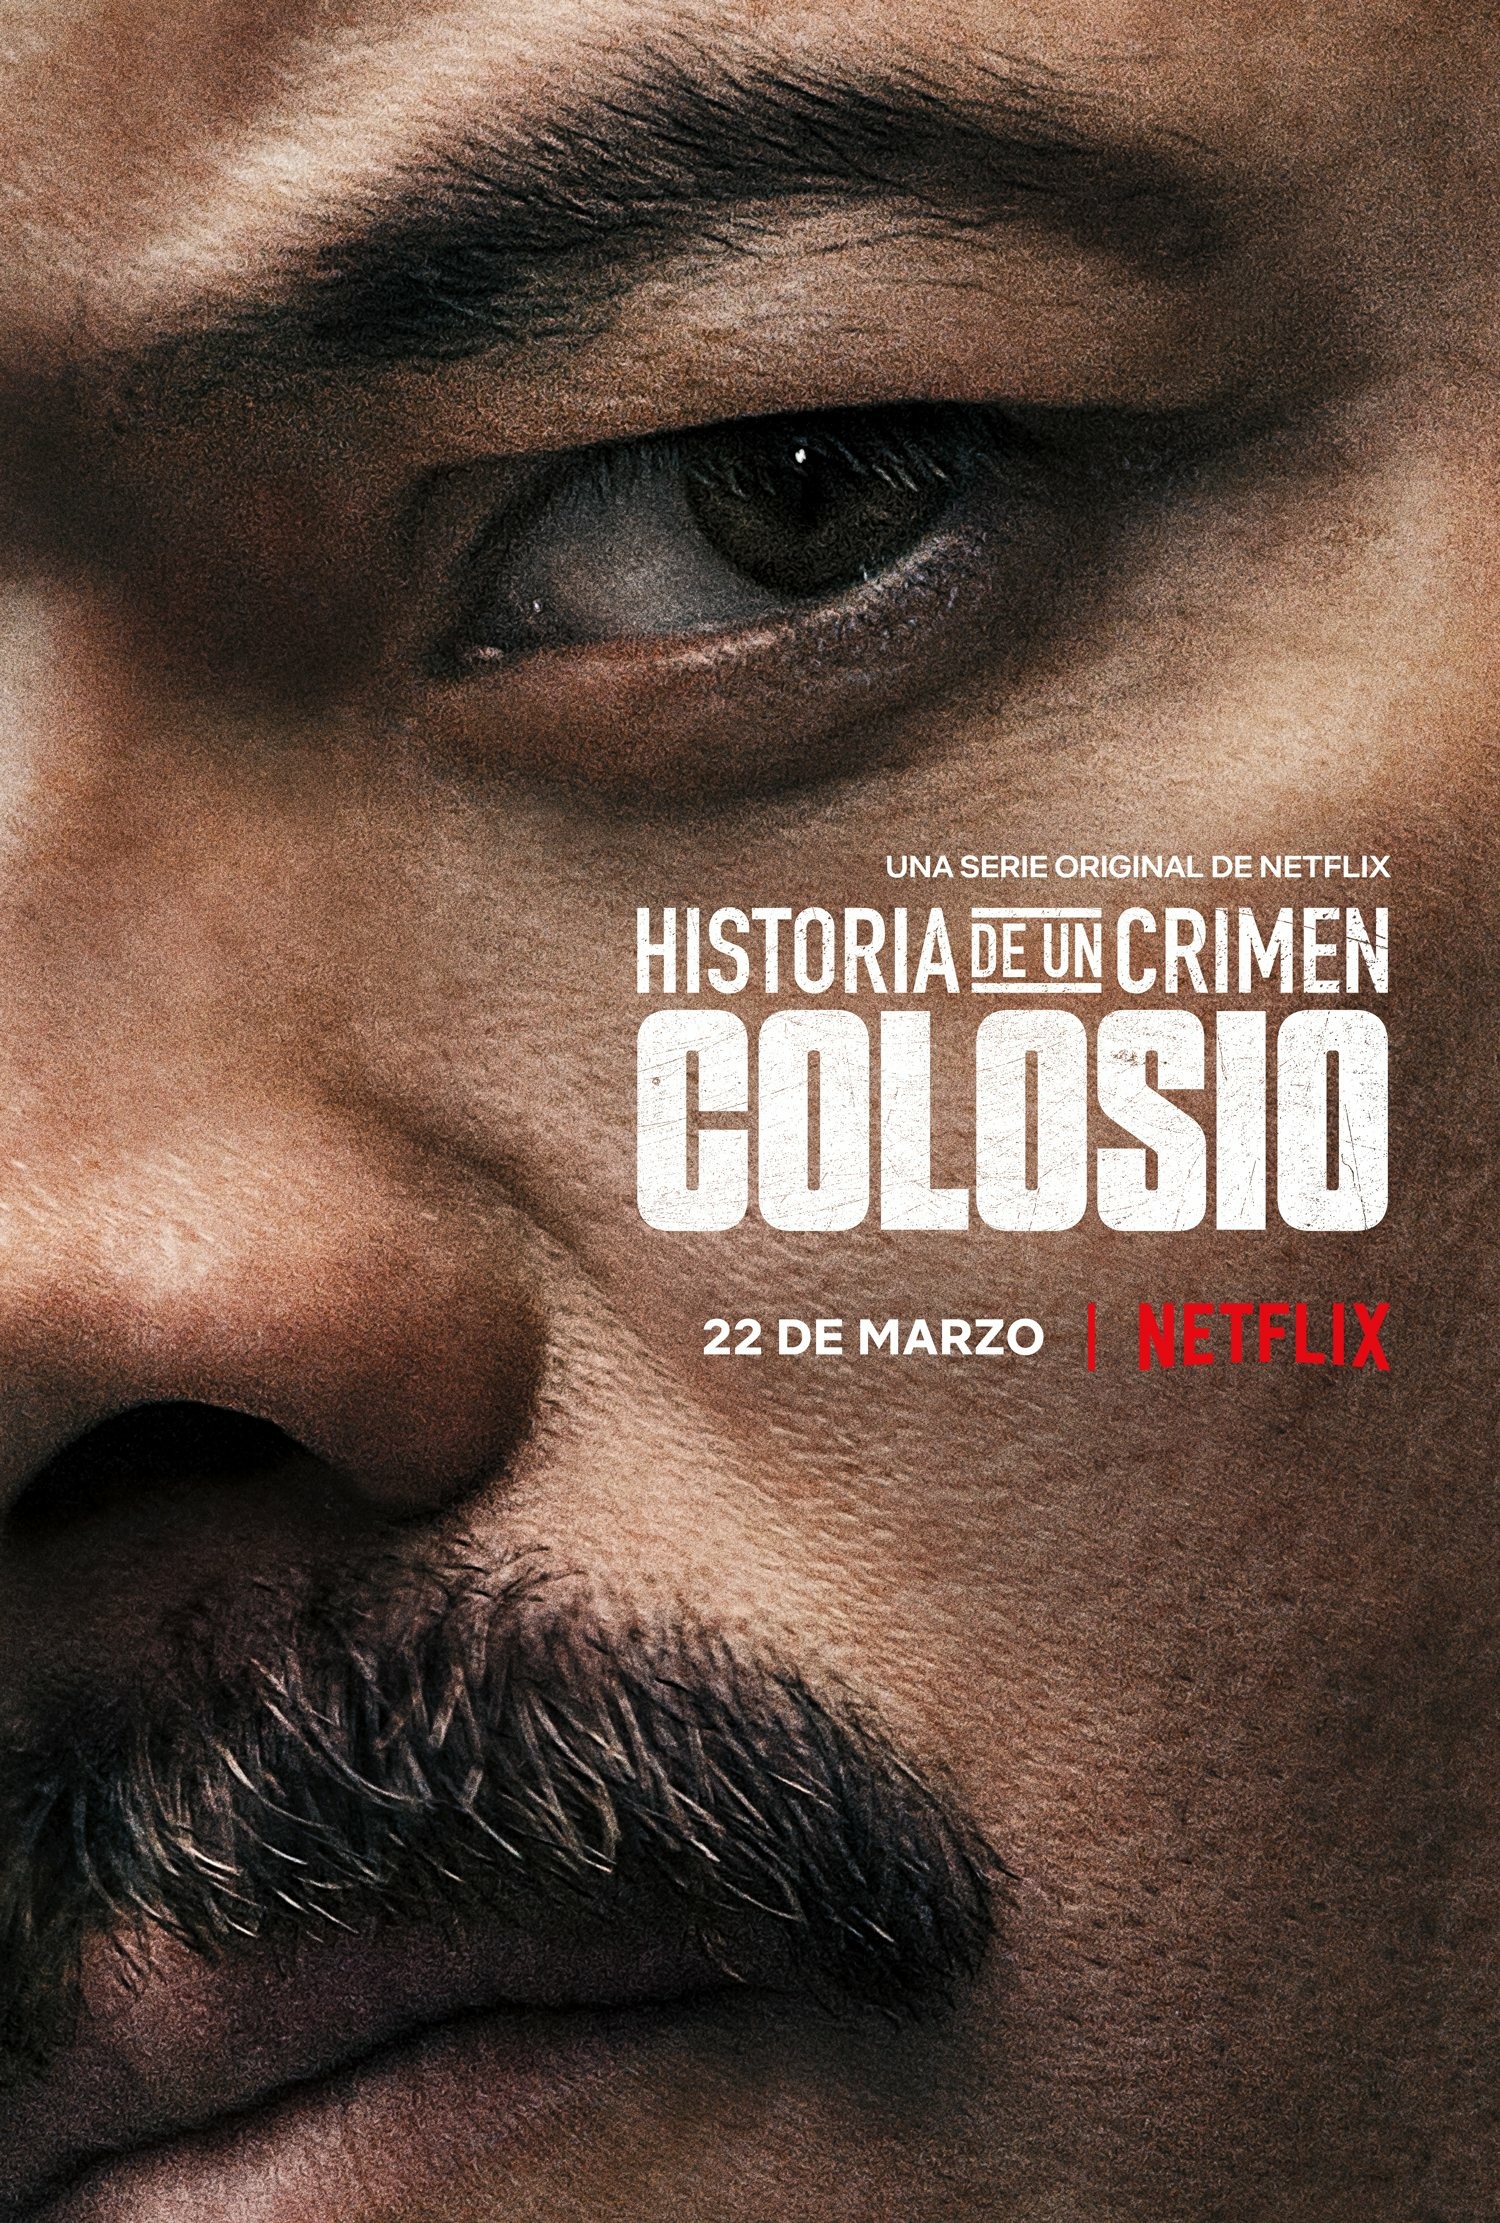 Mega Sized TV Poster Image for Historia de un Crimen: Colosio 